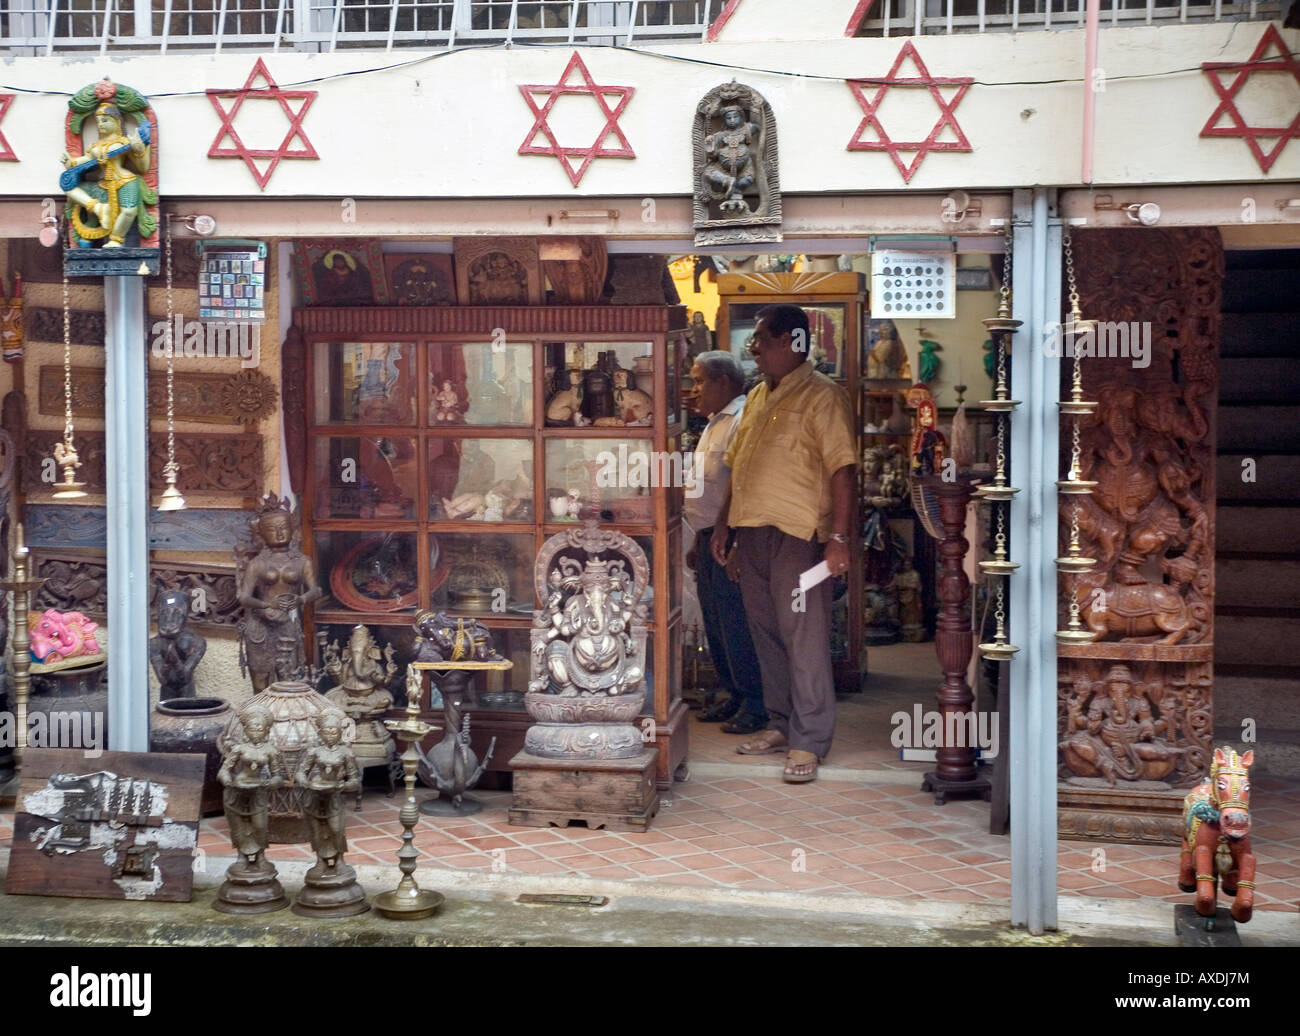 Petite boutique pour les touristes la vente d'antiquités et reproductions d'artefacts hindou juif en ville Kochi Cochin Kerala Inde du Sud Banque D'Images